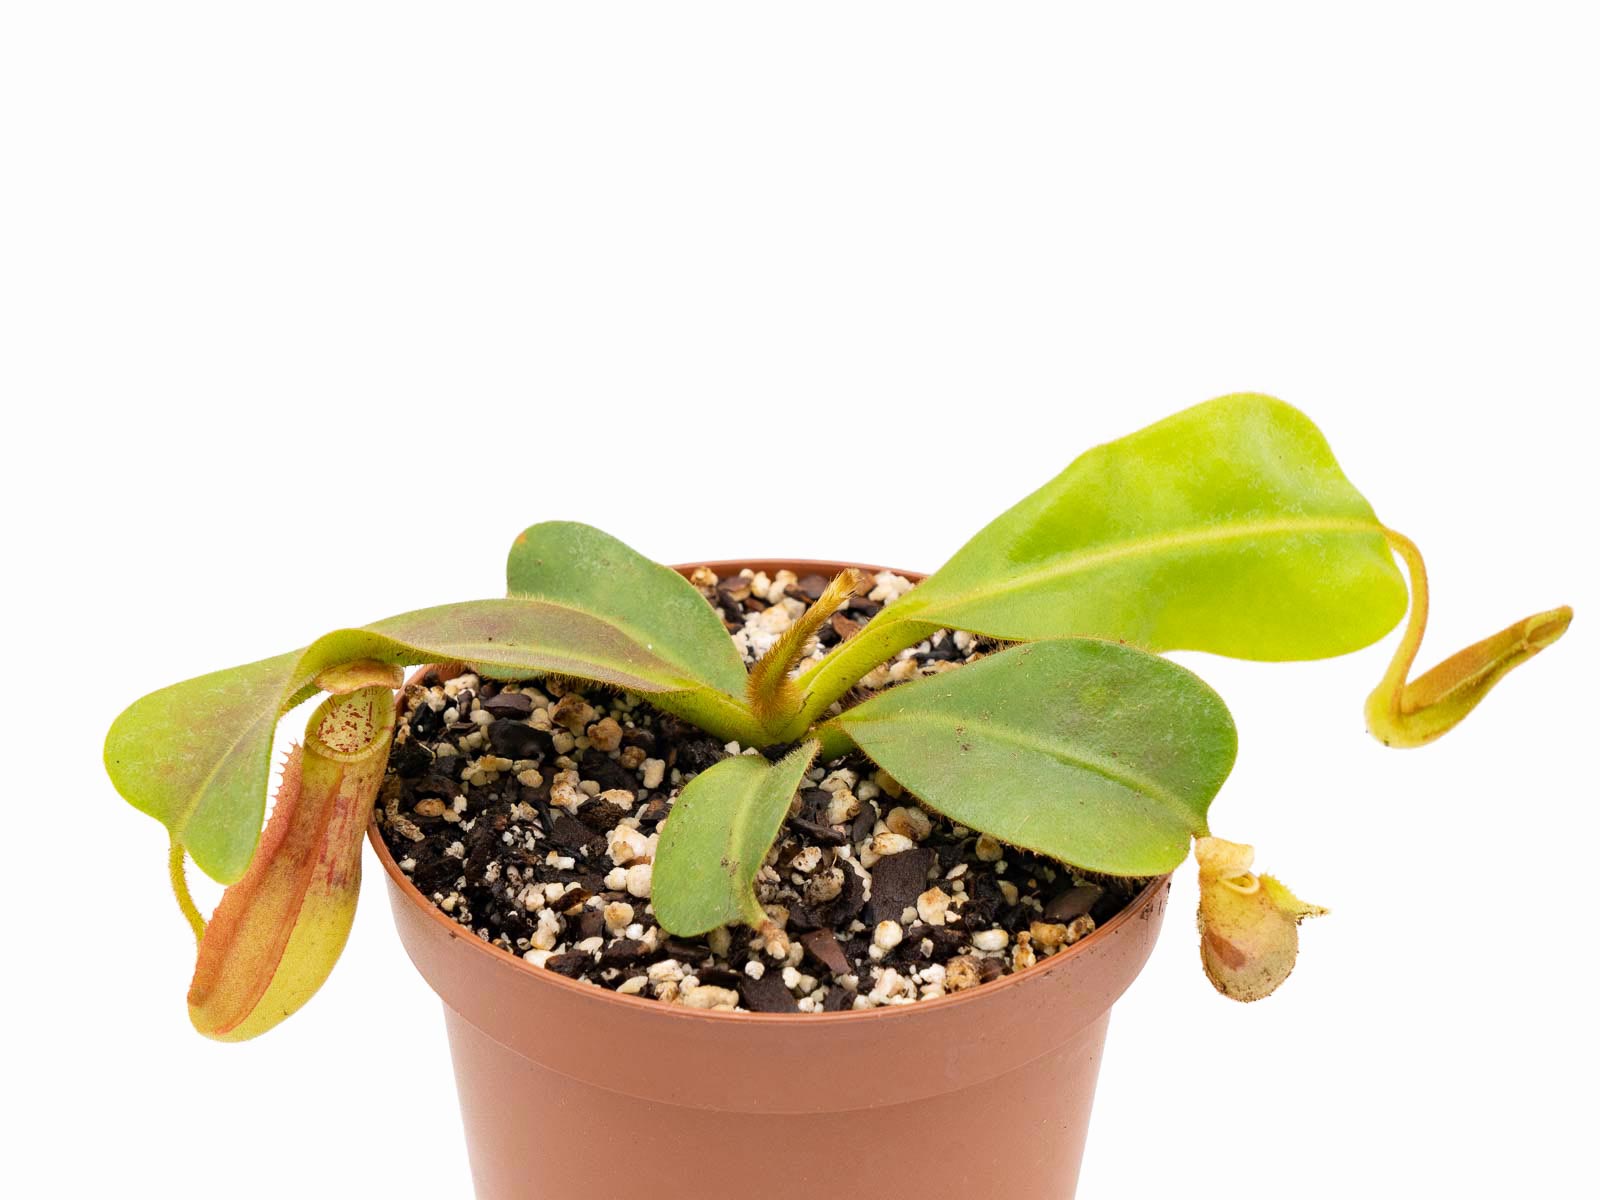 Nepenthes (mollis x veitchii) x veitchii